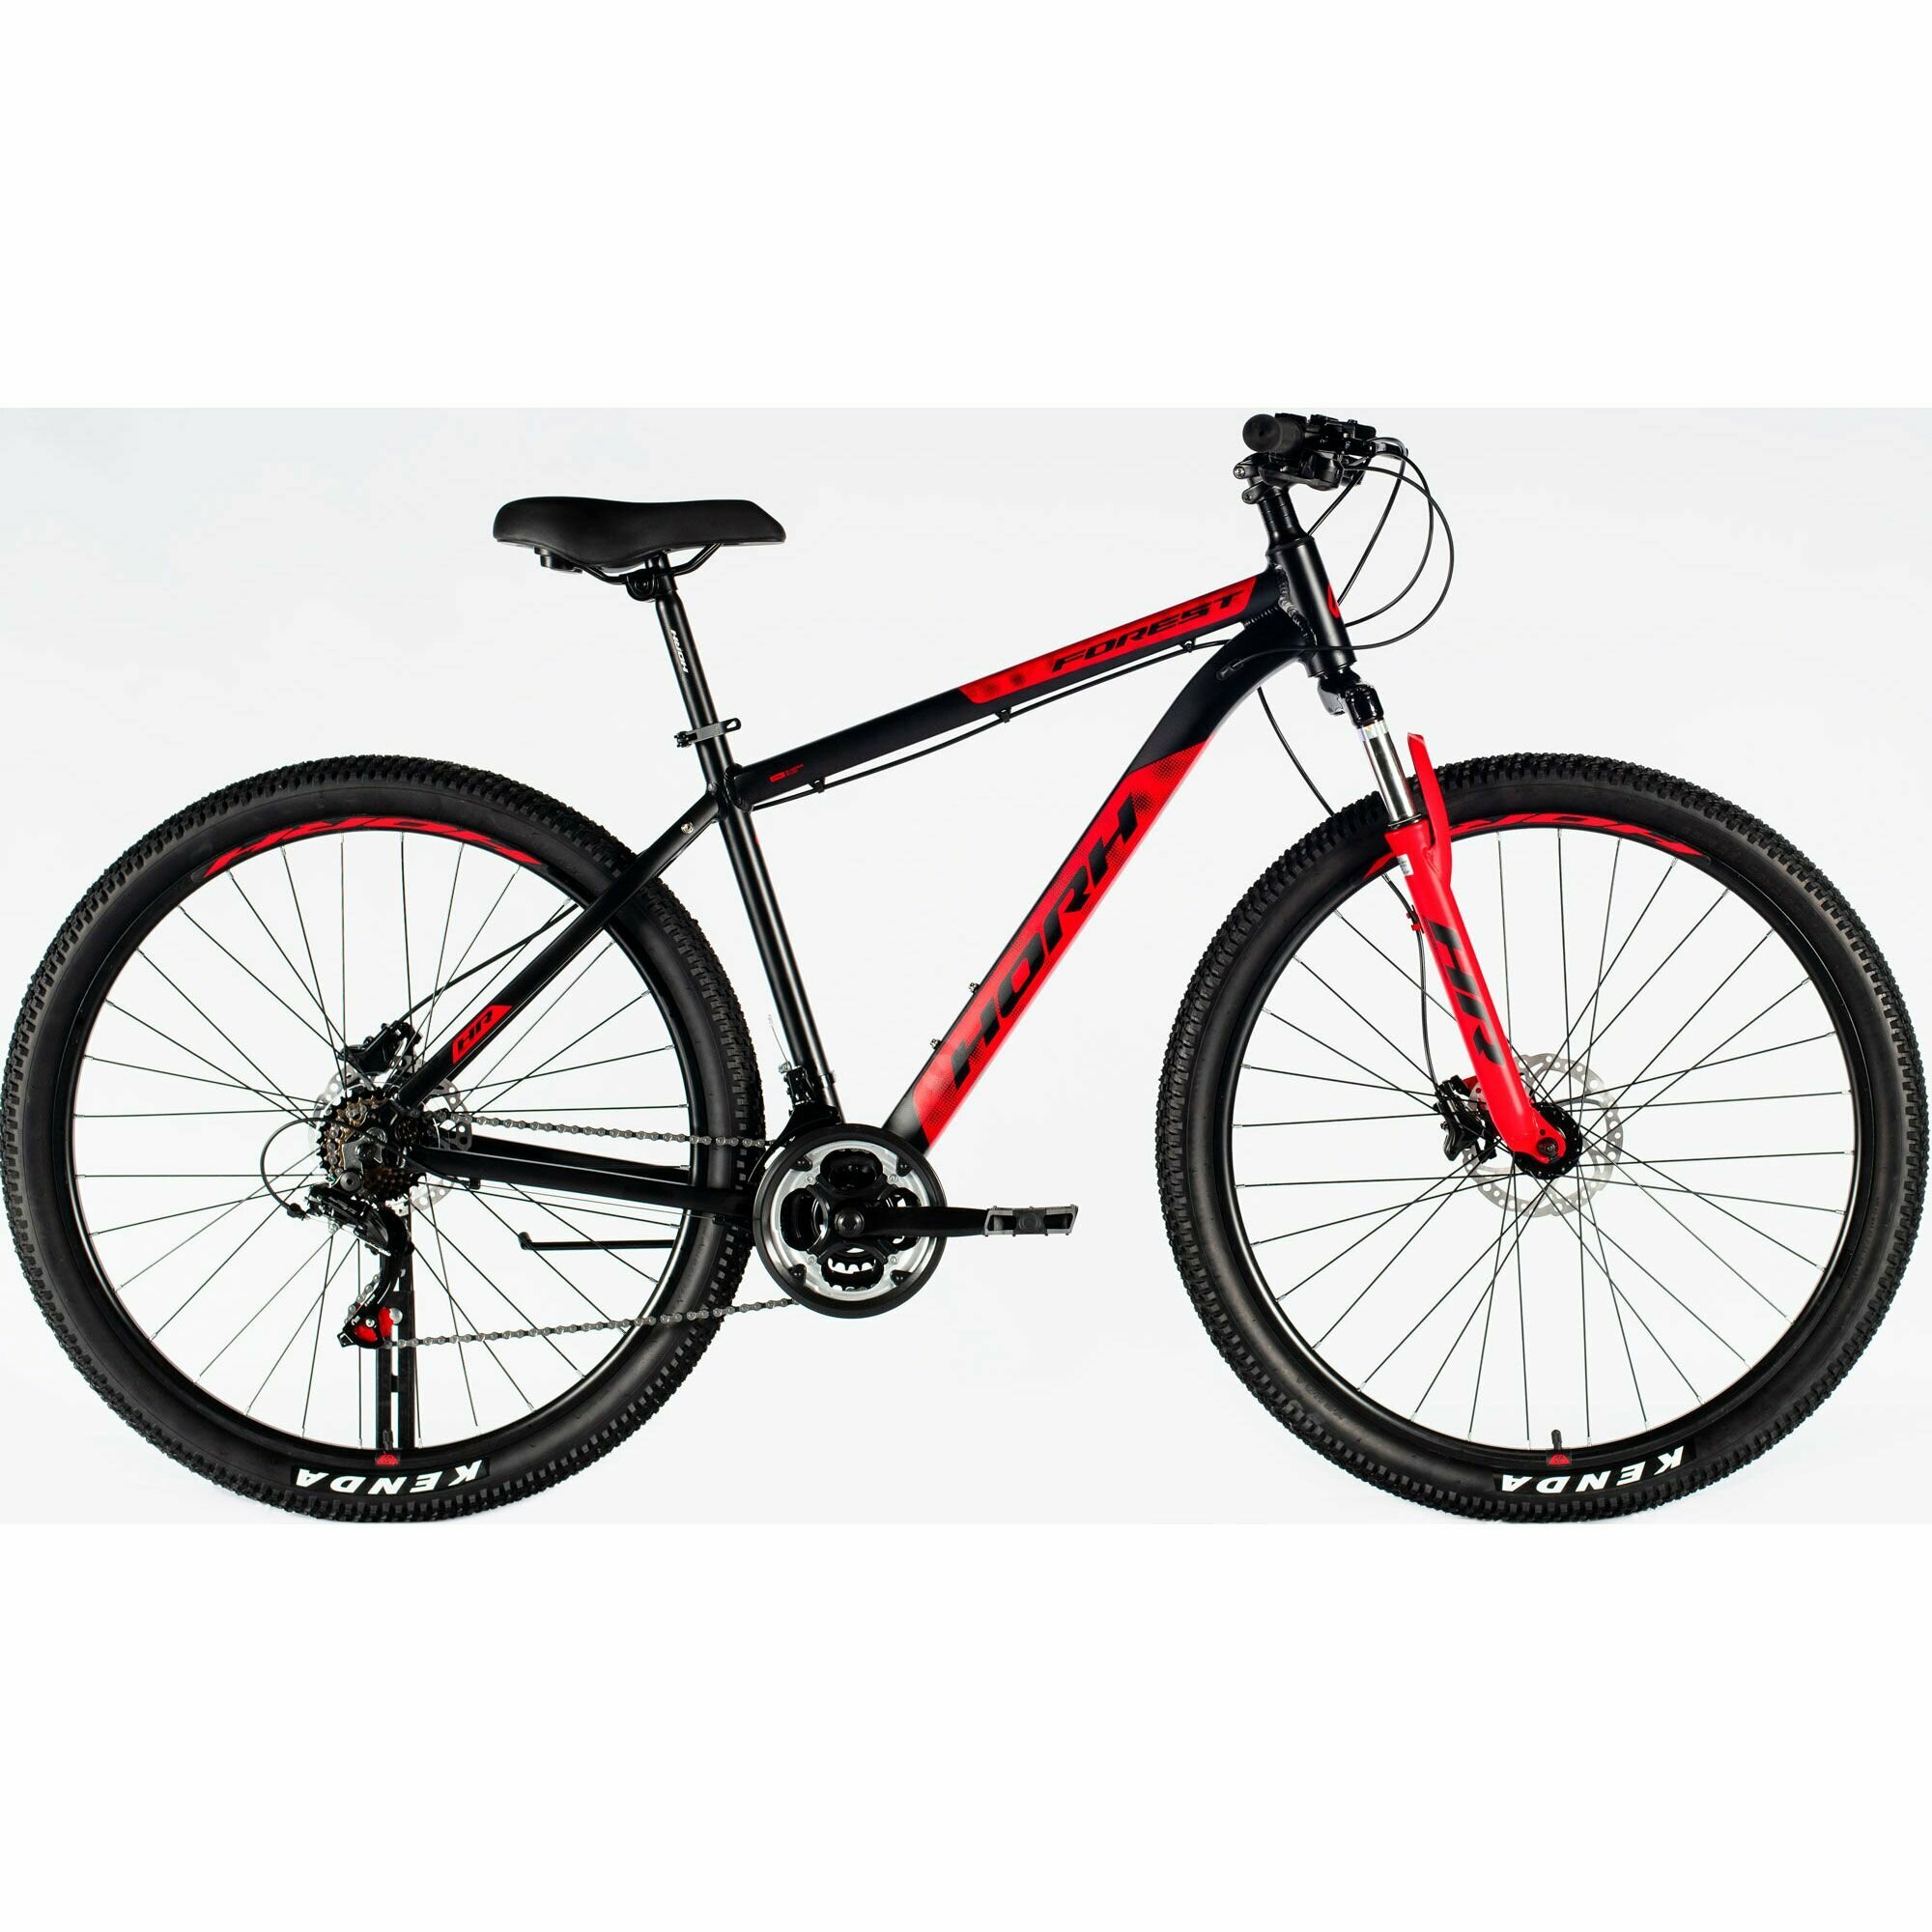 Велосипед горный HORH FOREST FHD 9.0 29" (2024), хардтейл, взрослый, мужской, алюминиевая рама, 21 скорость, дисковые гидравлические тормоза, цвет Black-Red, черный/красный цвет, размер рамы 21", для роста 185-195 см